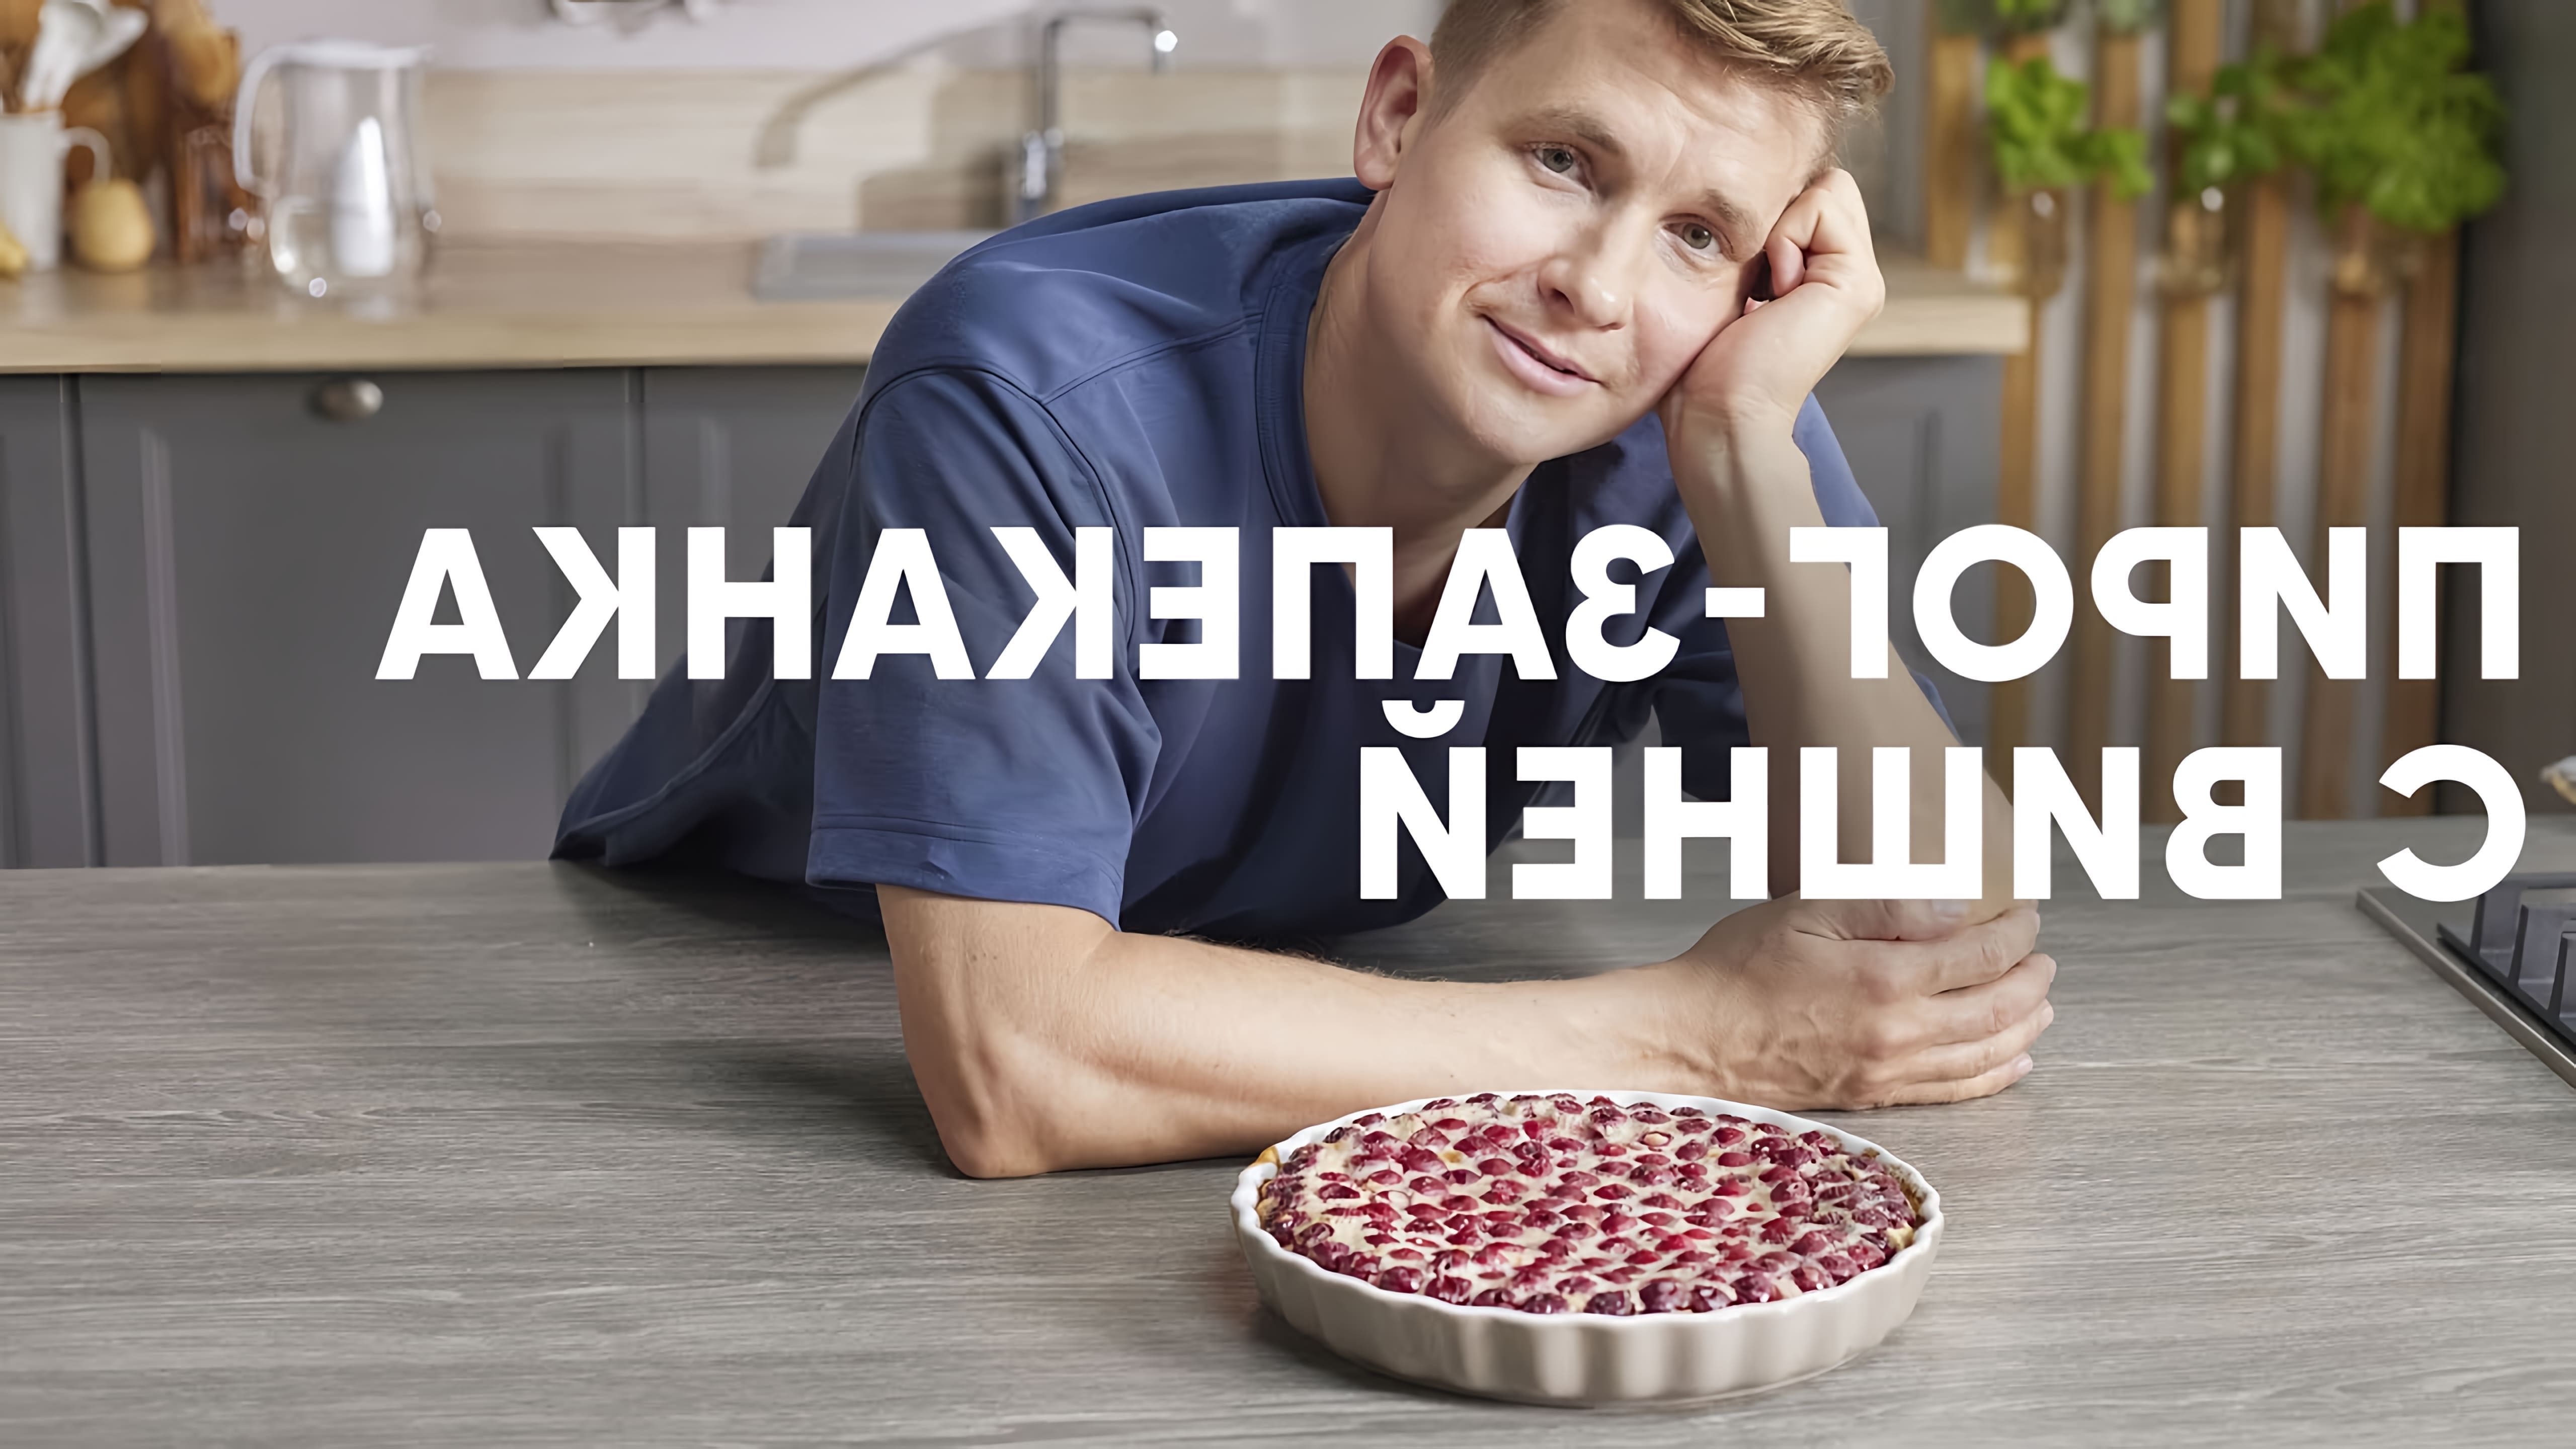 В этом видео шеф-повар Белькович показывает, как приготовить вишневый клафути - французский десерт, похожий на пирог и запеканку одновременно